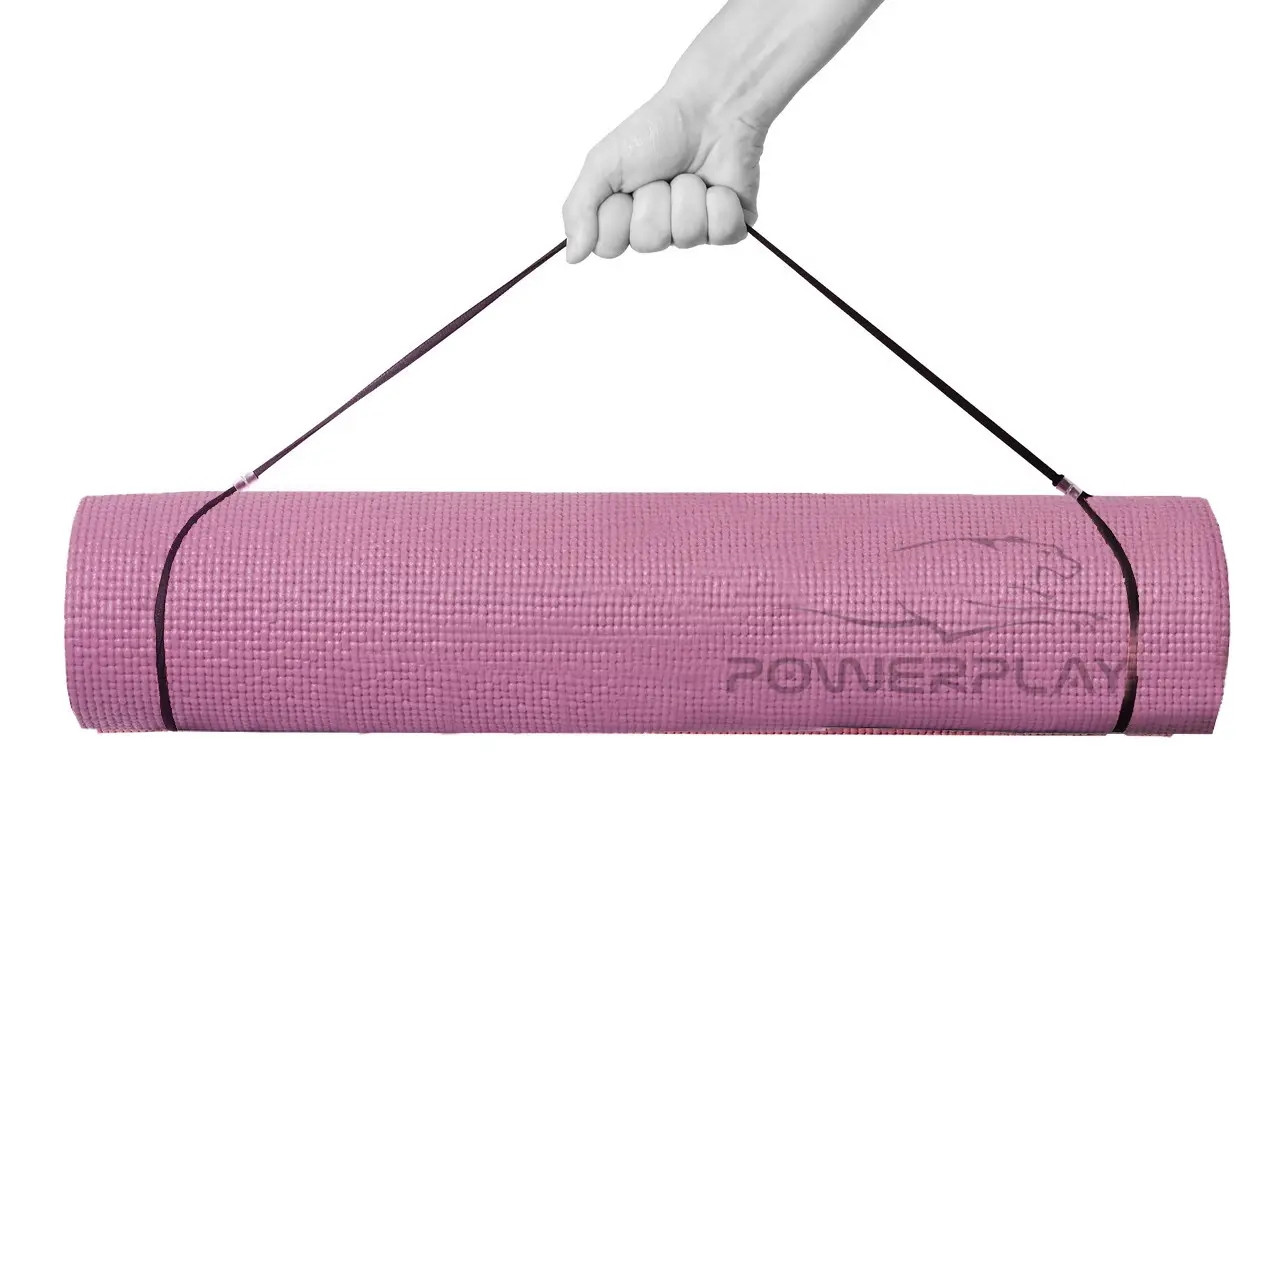 Килимок для йоги та фітнесу PowerPlay 4010, 173x61x0.6, Rose CN10357 vh